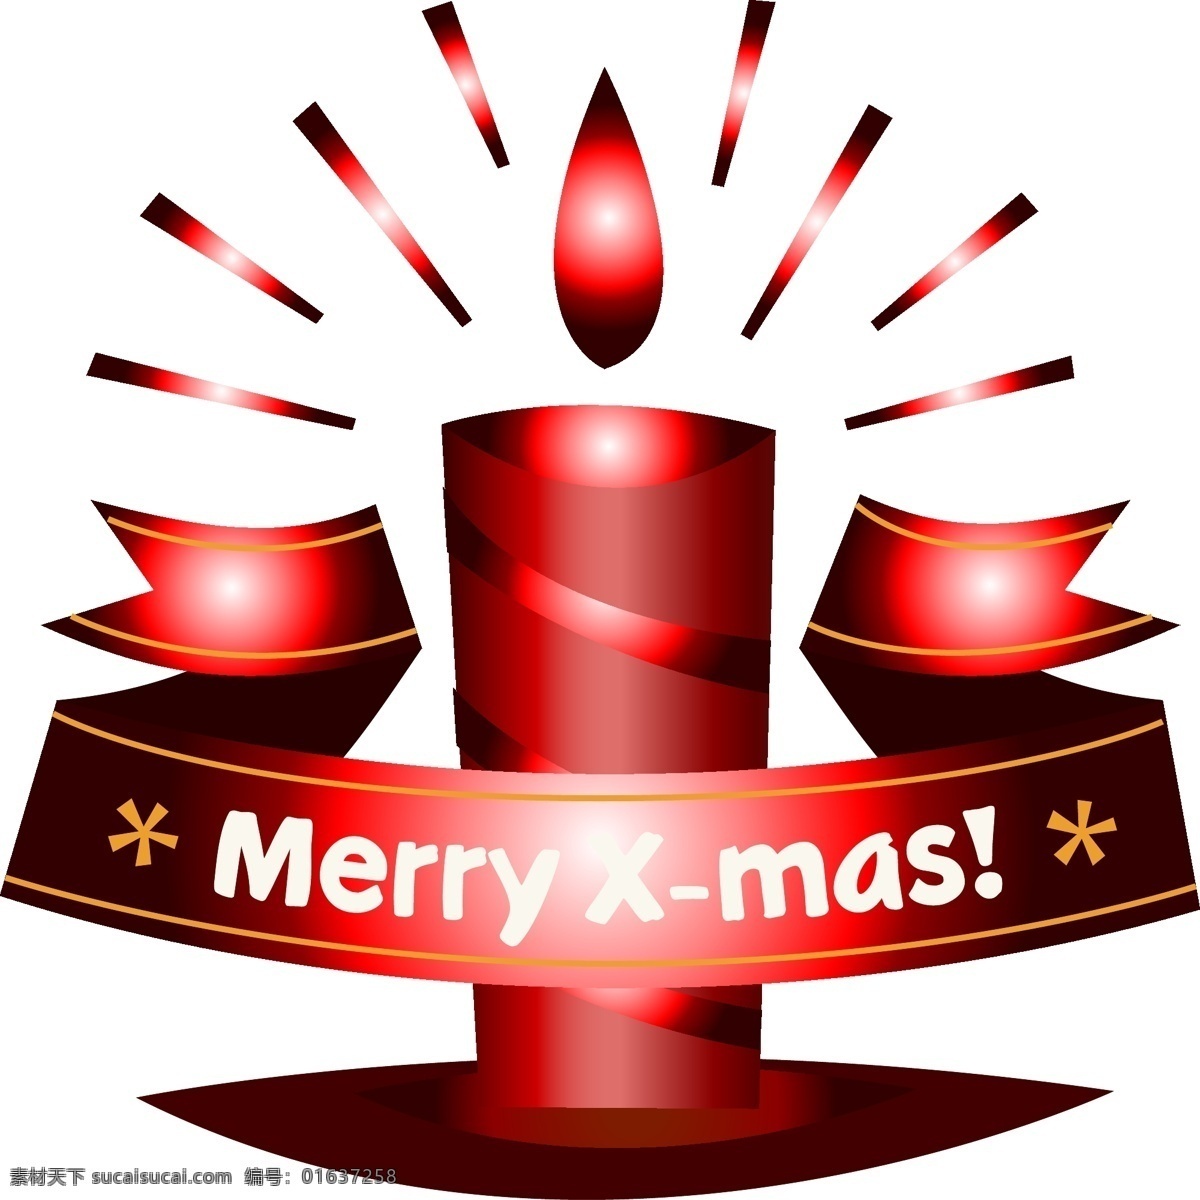 创意 圣诞 元旦 元素 蜡烛 矢量 圣诞元素 圣诞素材 红色蜡烛 蜡烛素材 元旦蜡烛